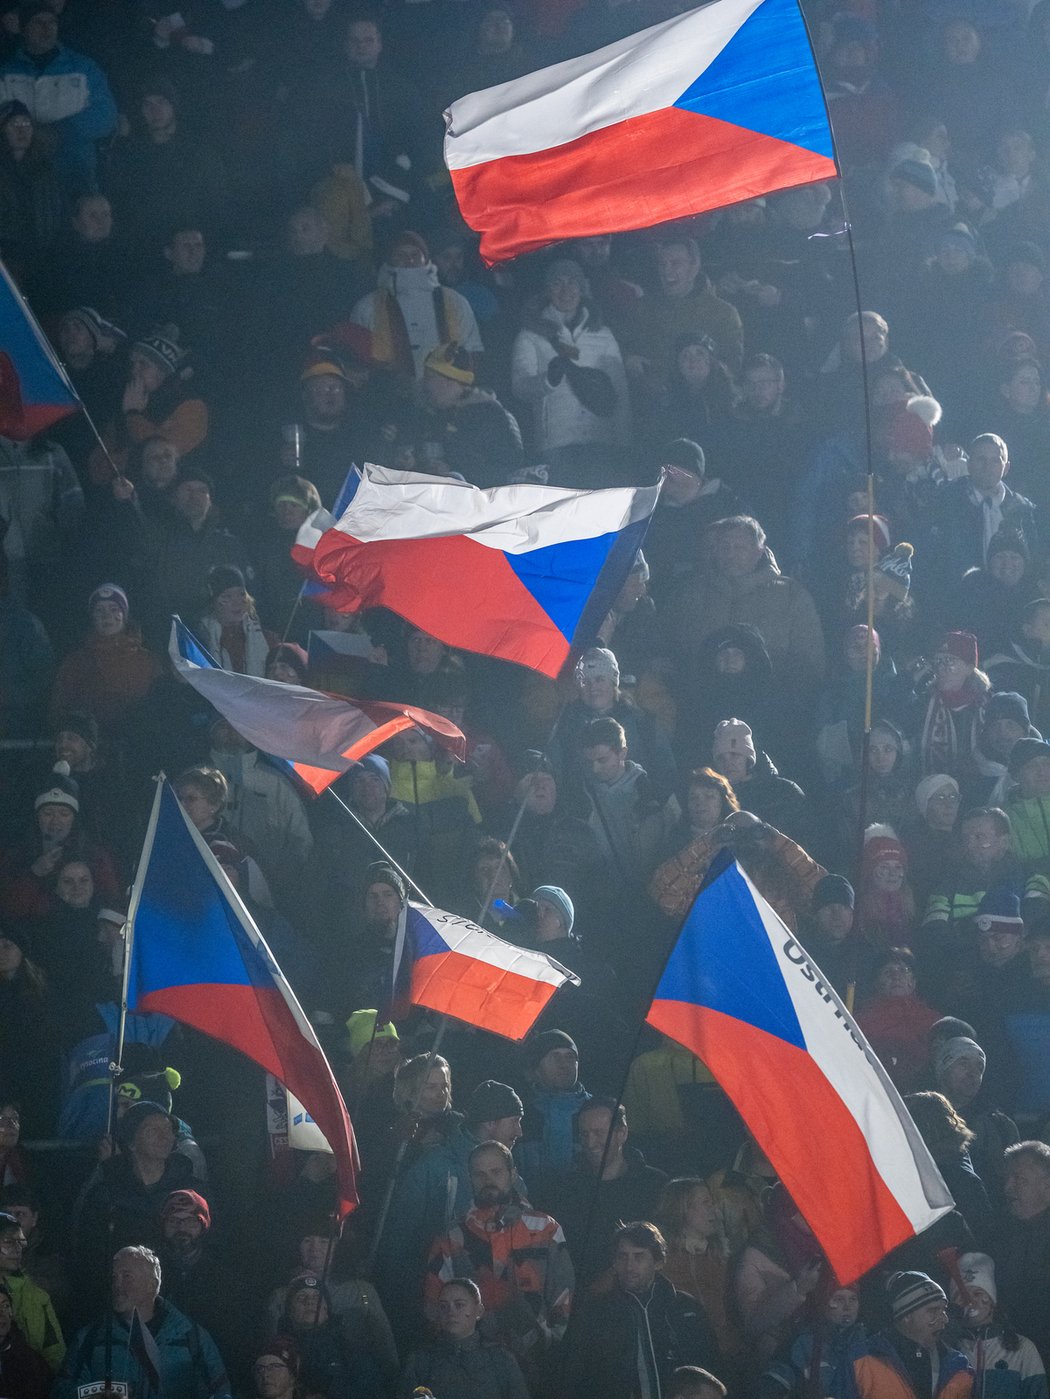 České vlajky při sprintu žen na MS v biatlonu v Novém Městě na Moravě